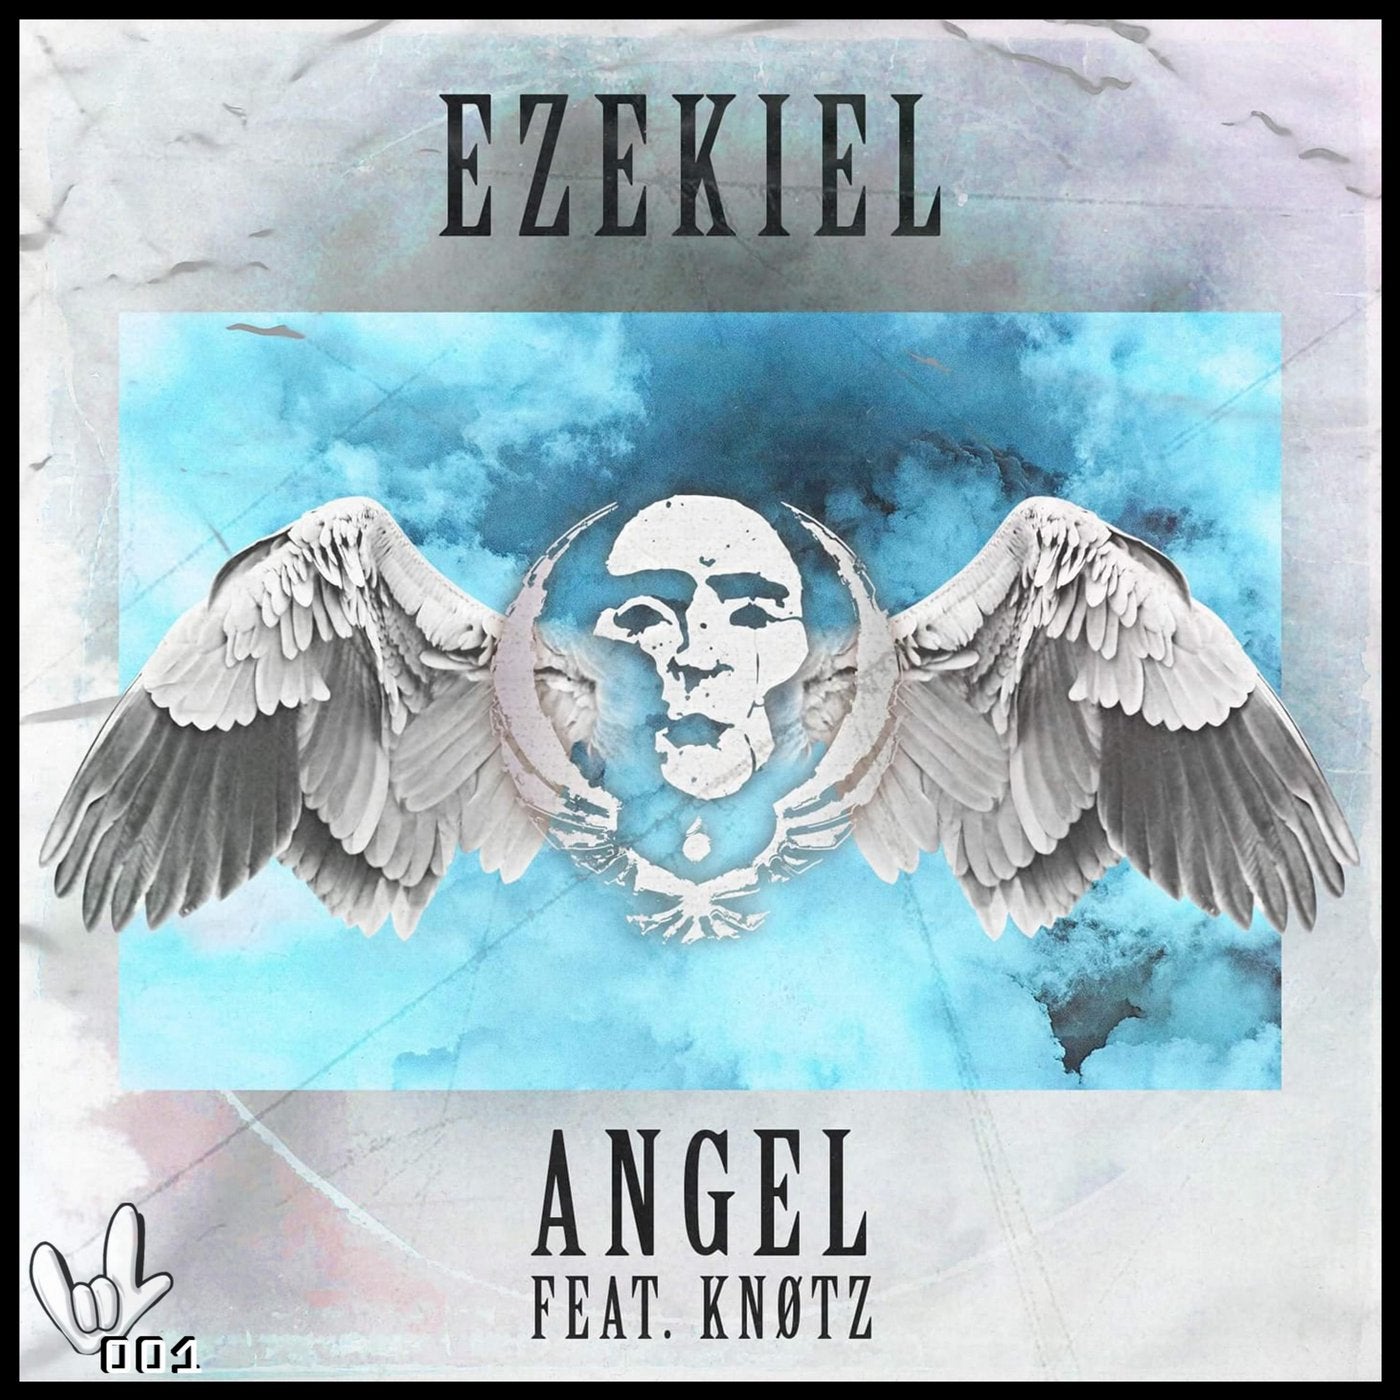 Ezekiel Angel